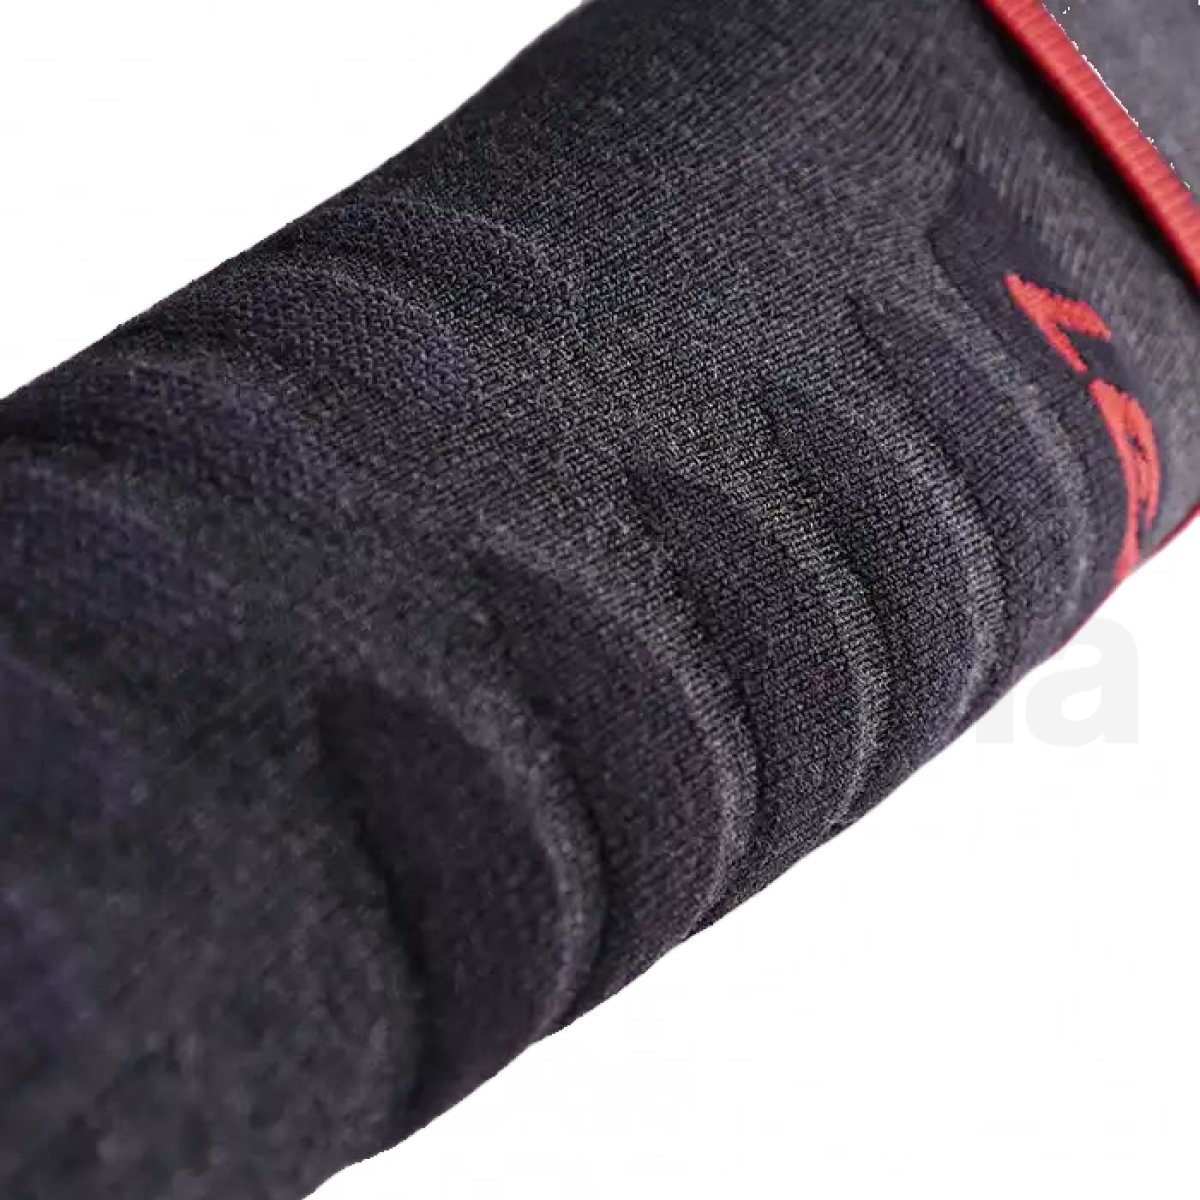 Ponožky vyhřívané Lenz Heat Sock 5.1 Toe Cap U - šedá/červená (bez baterie)